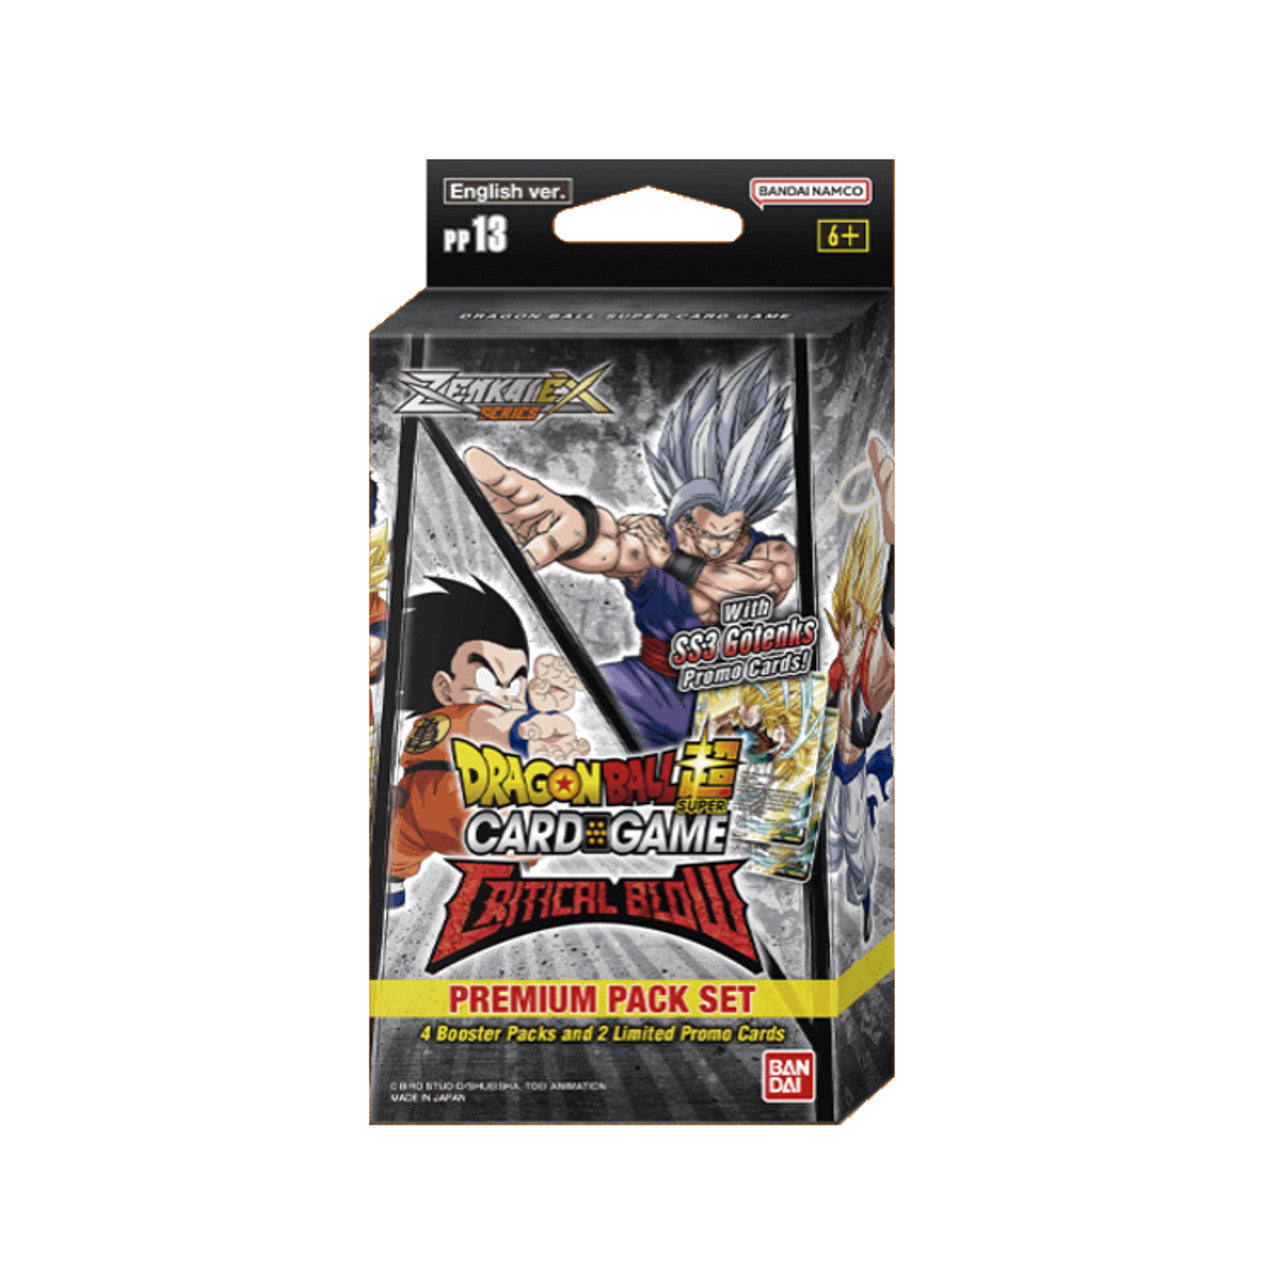 Dragon Ball Super Card Game - Premium Pack Critical Blow PP13 - EN